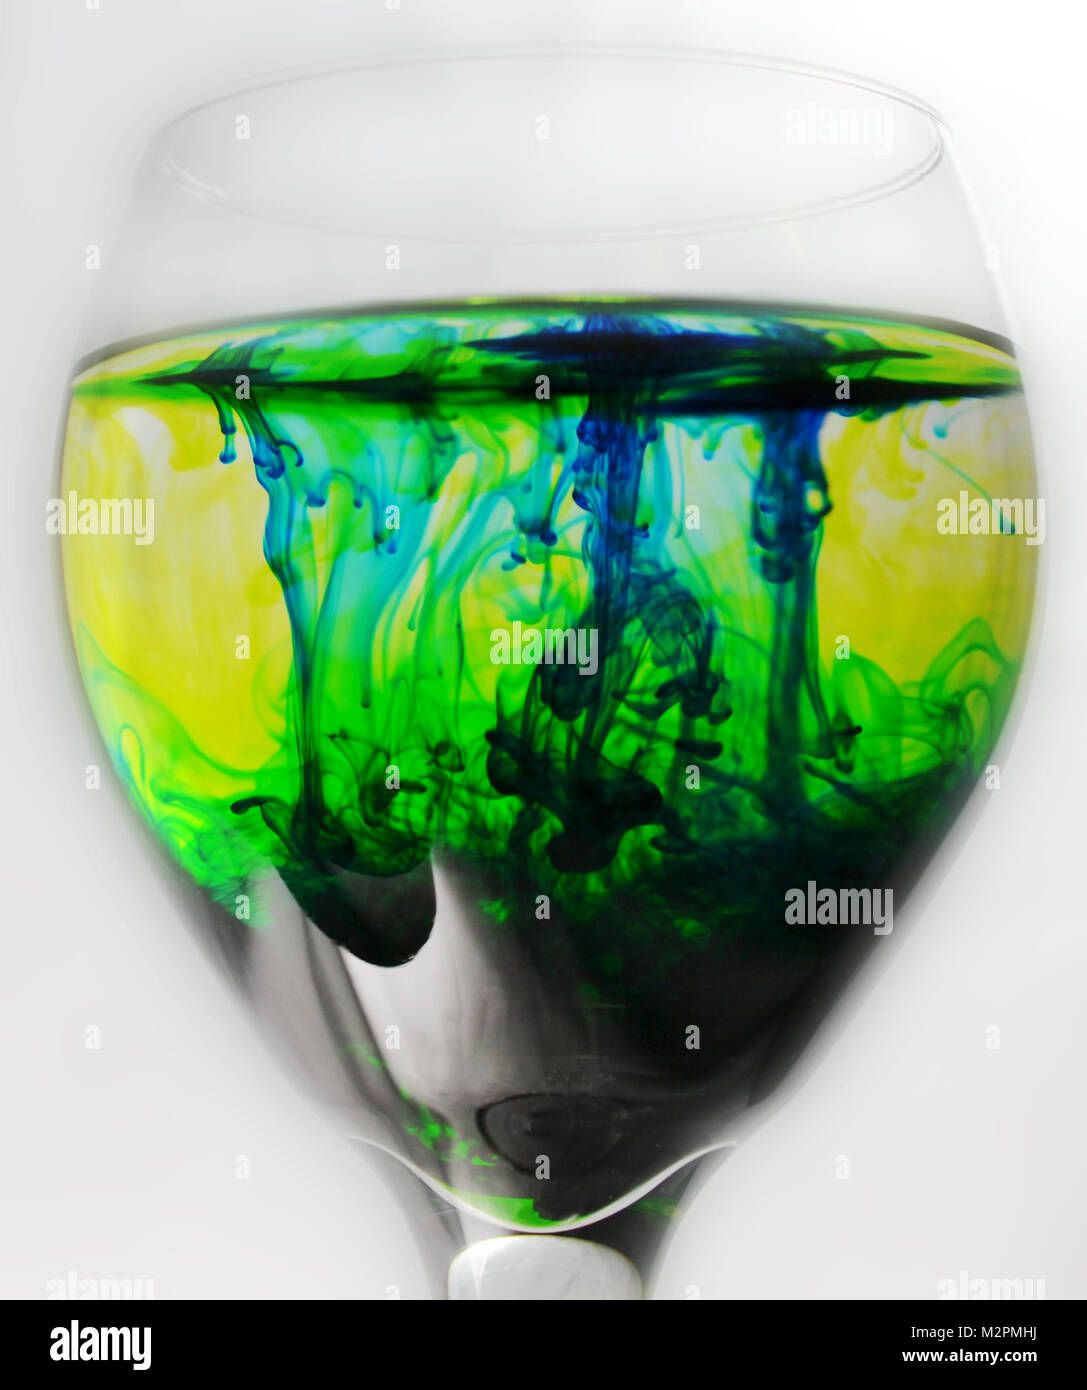 Wein Glas mit Wasser und grünen und blauen Tropfen Farbstoff gefüllt Stockfoto